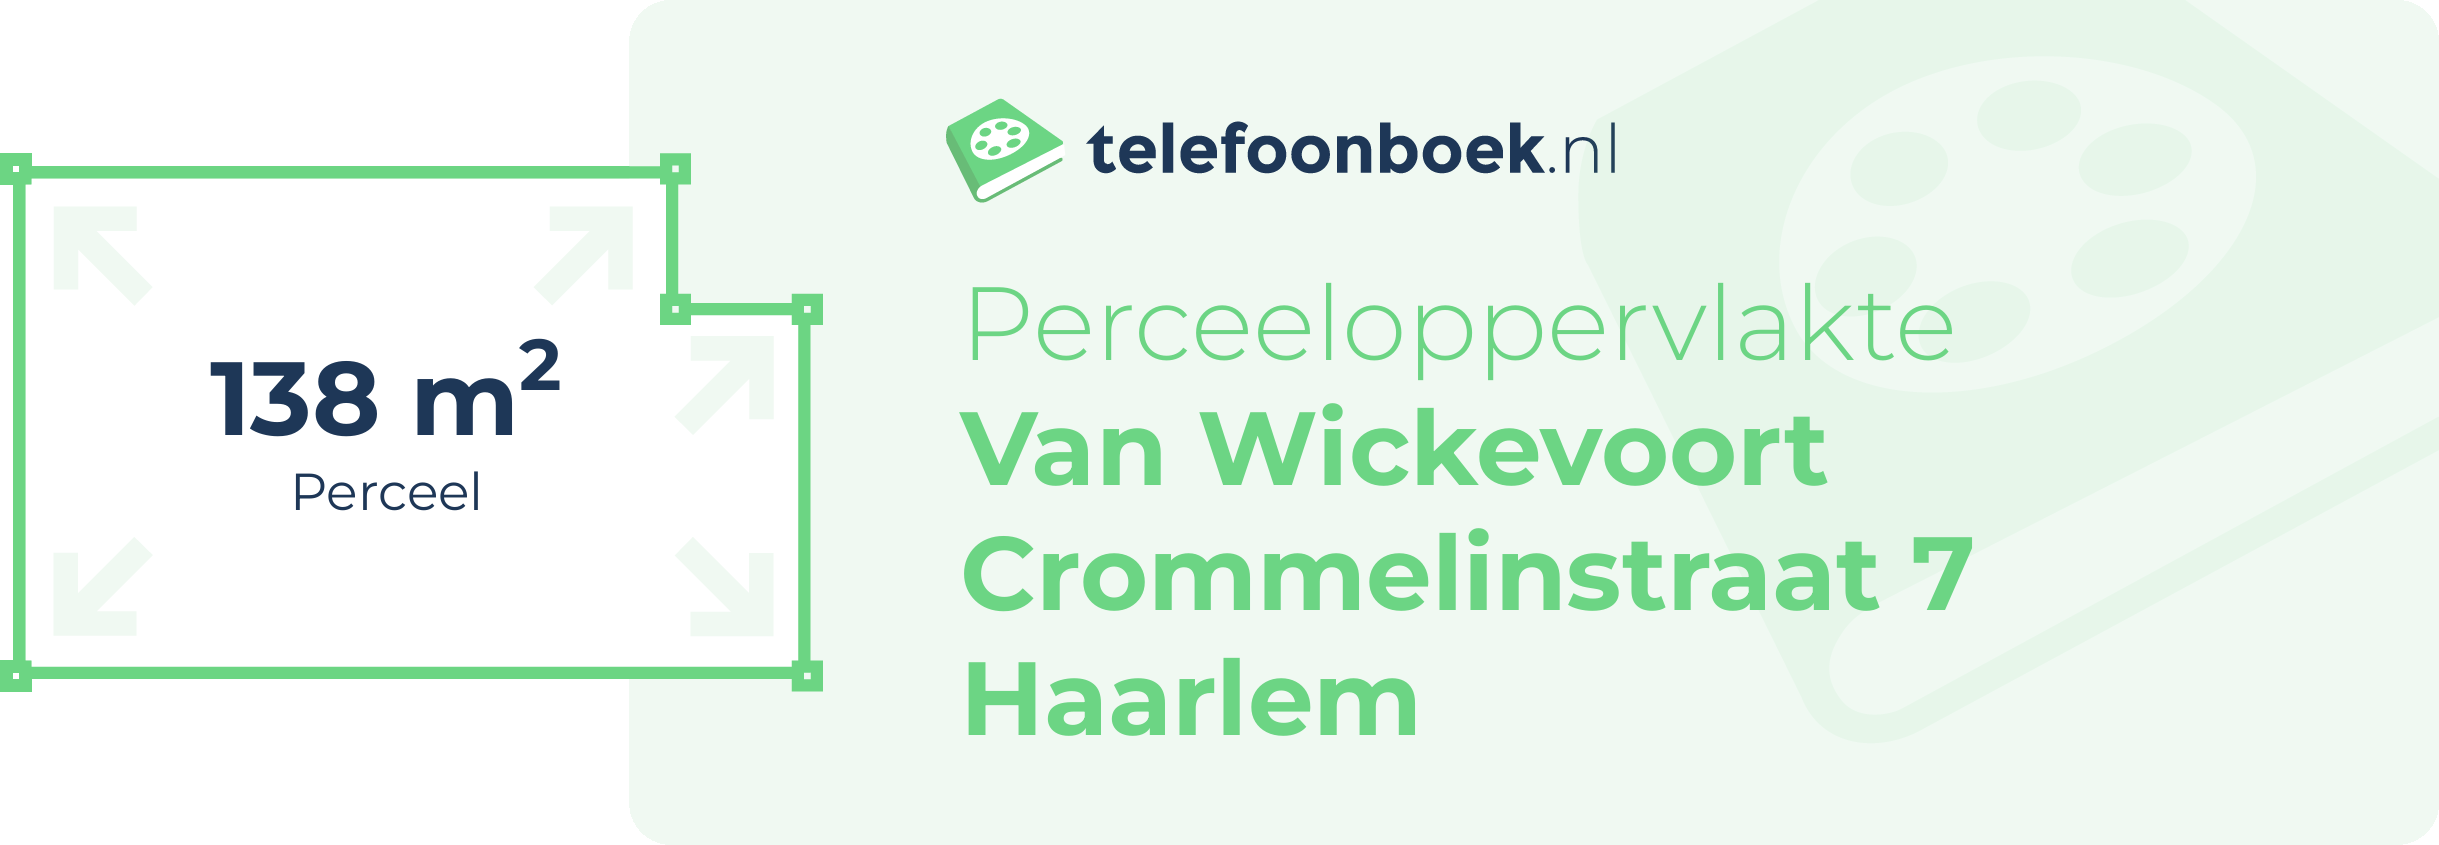 Perceeloppervlakte Van Wickevoort Crommelinstraat 7 Haarlem